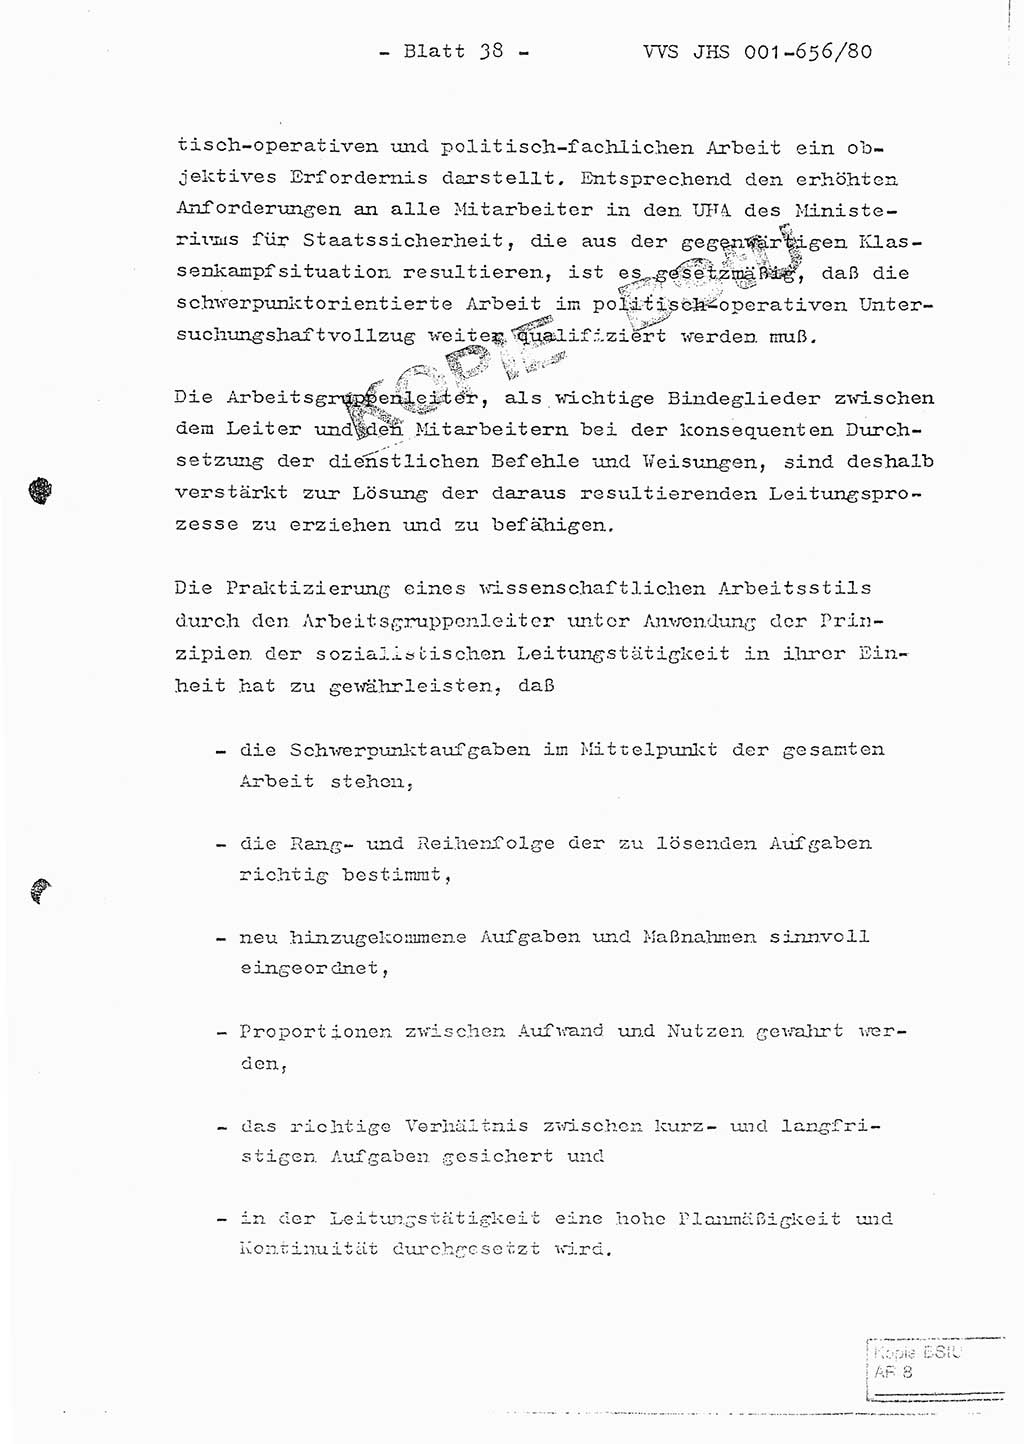 Fachschulabschlußarbeit Unterleutnant Christian Kätzel (Abt. ⅩⅣ), Ministerium für Staatssicherheit (MfS) [Deutsche Demokratische Republik (DDR)], Juristische Hochschule (JHS), Vertrauliche Verschlußsache (VVS) 001-656/80, Potsdam 1980, Blatt 38 (FS-Abschl.-Arb. MfS DDR JHS VVS 001-656/80 1980, Bl. 38)